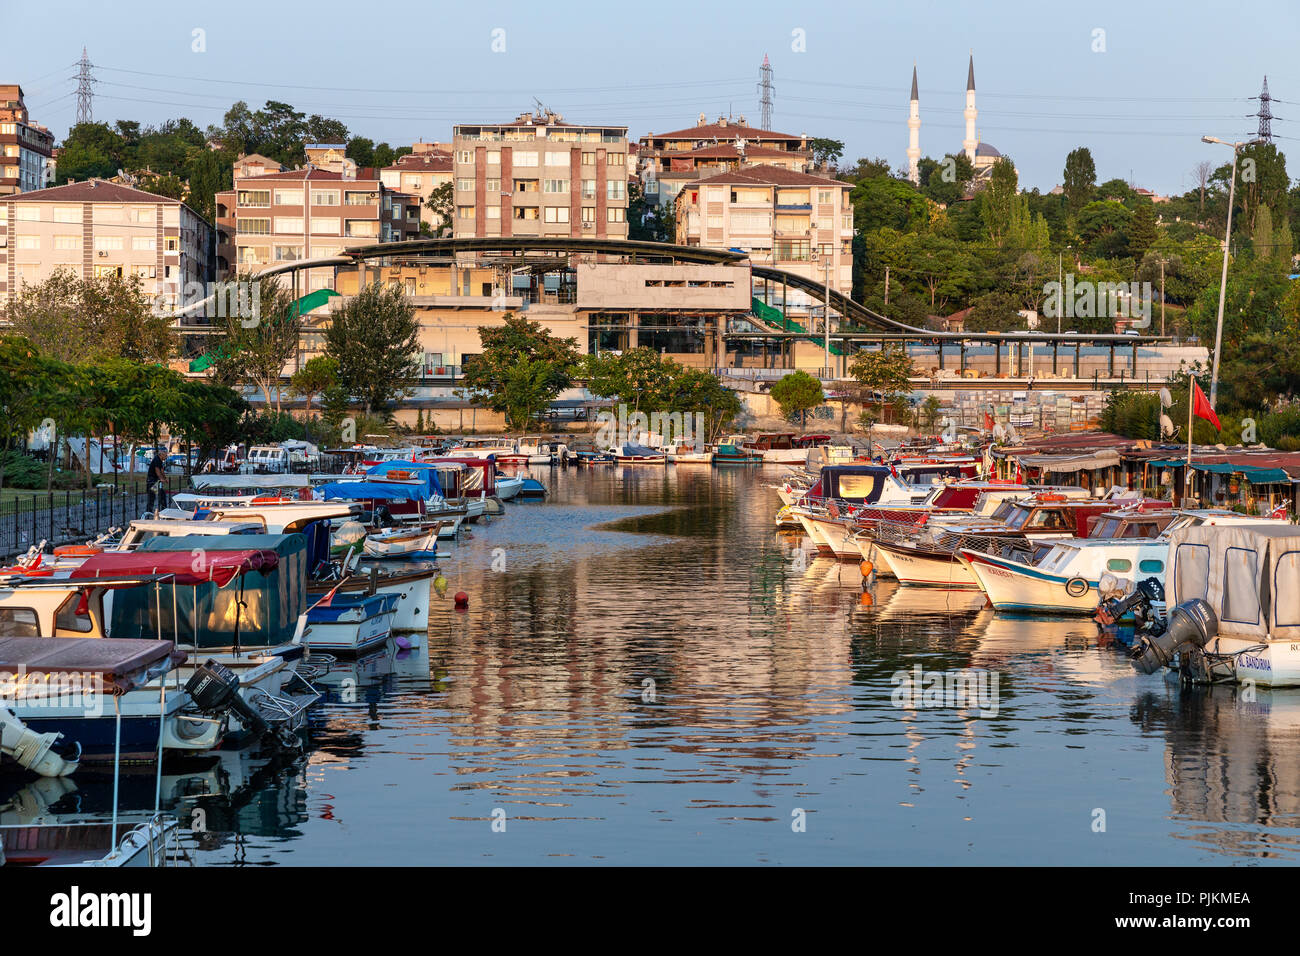 Vista desde la orilla de lago Kucukcekmece Kanarya. Lago Kucukcekmece es una laguna ubicada en la parte europea de Estambul, en el noroeste de la provincia de Turquía. Foto de stock